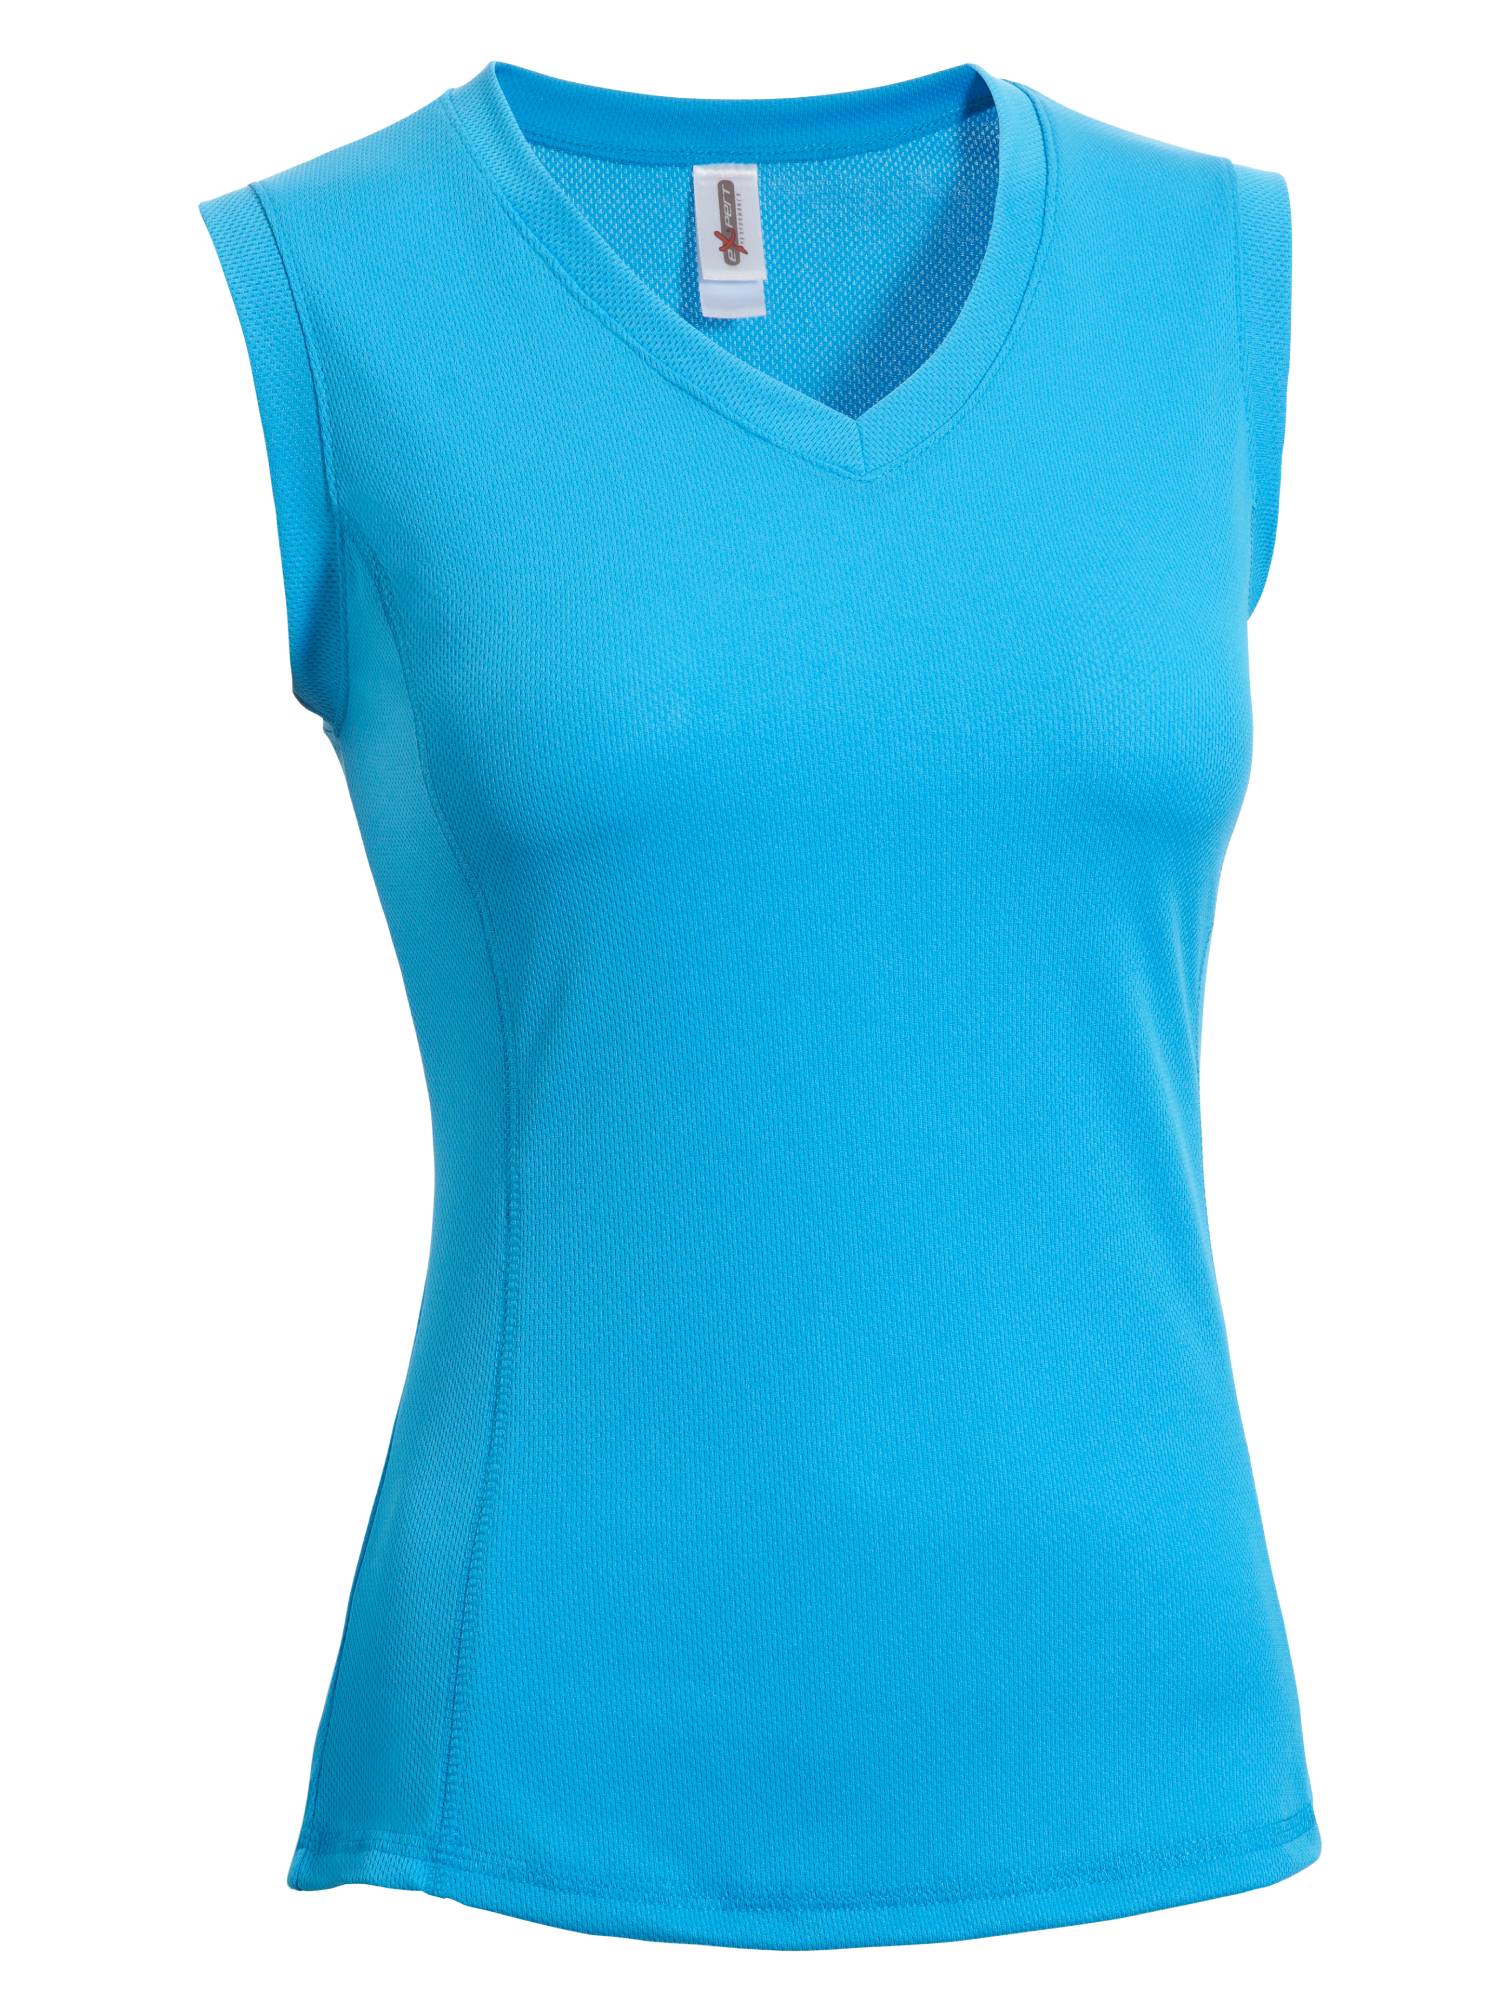 Women's Oxymesh Workout Tank Top T-Shirt